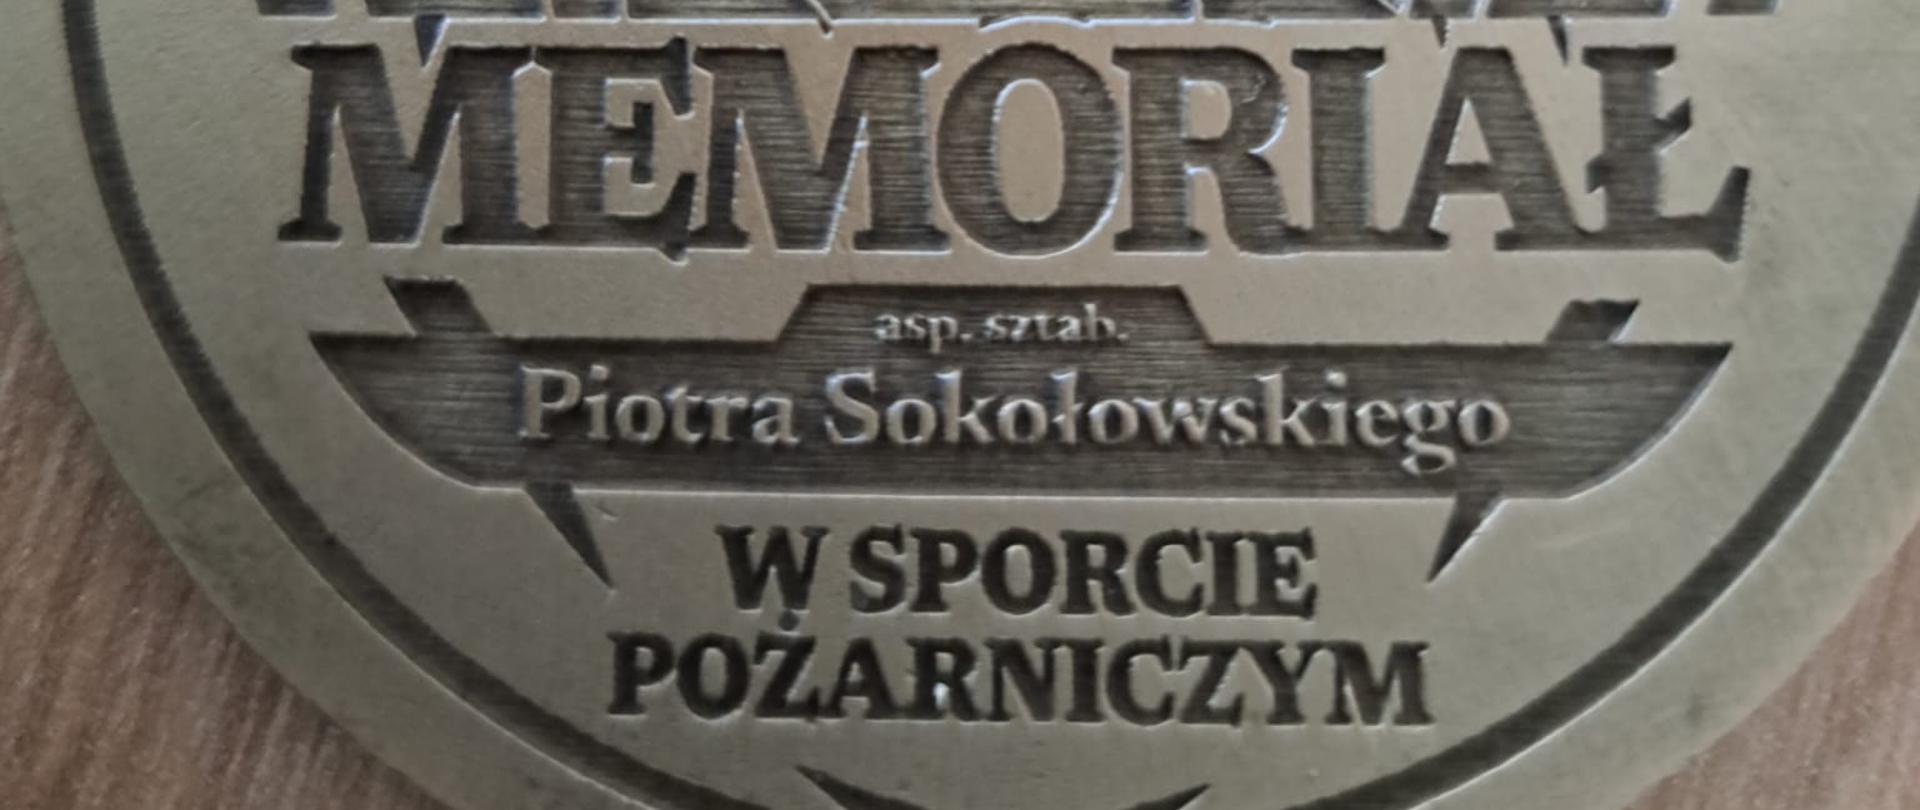 Memoriał asp. sztab. Piotra Sokołowskiego w Sporcie Pożarniczym